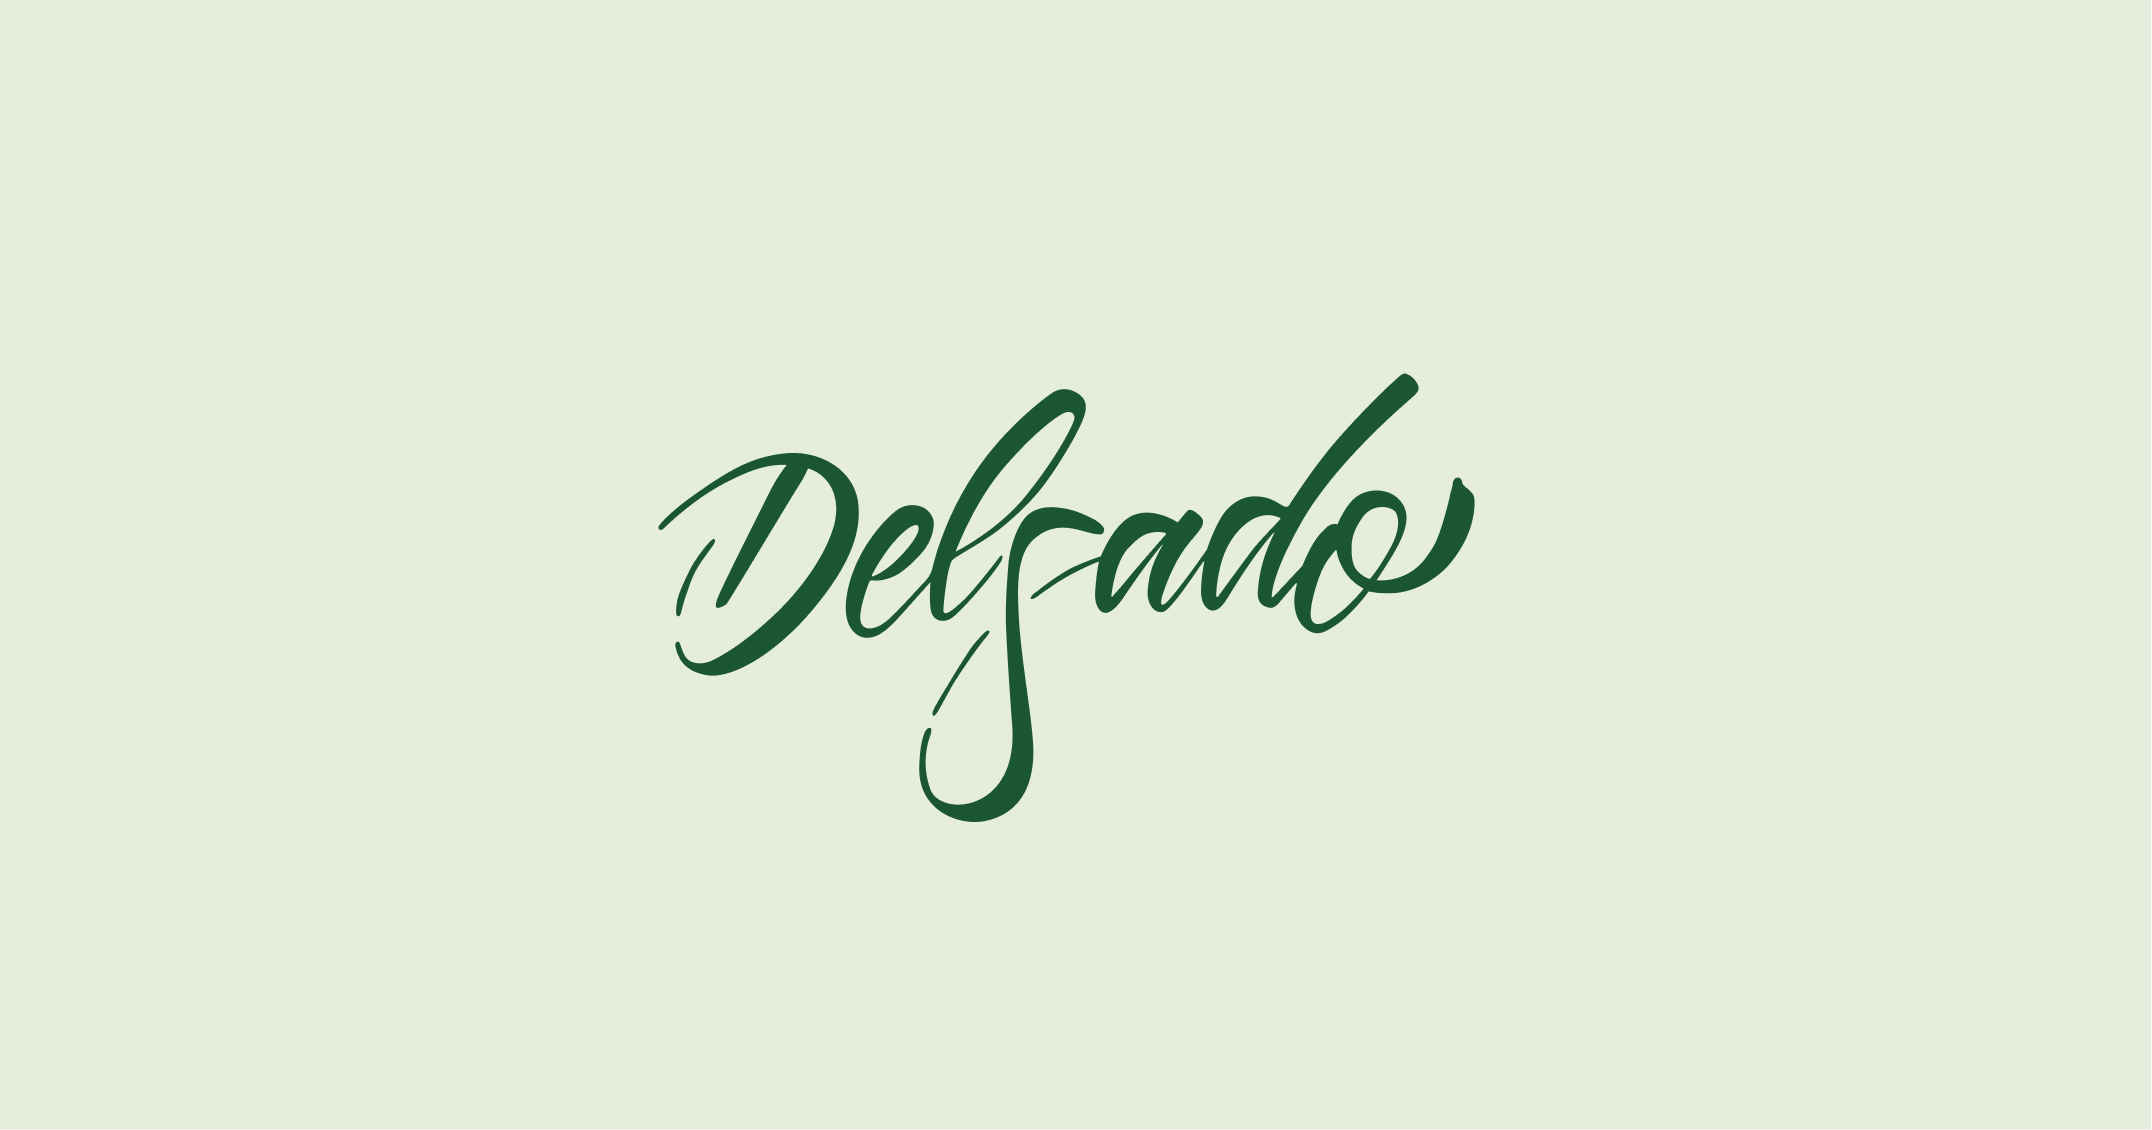 Delgado Seleccion Logotype Green